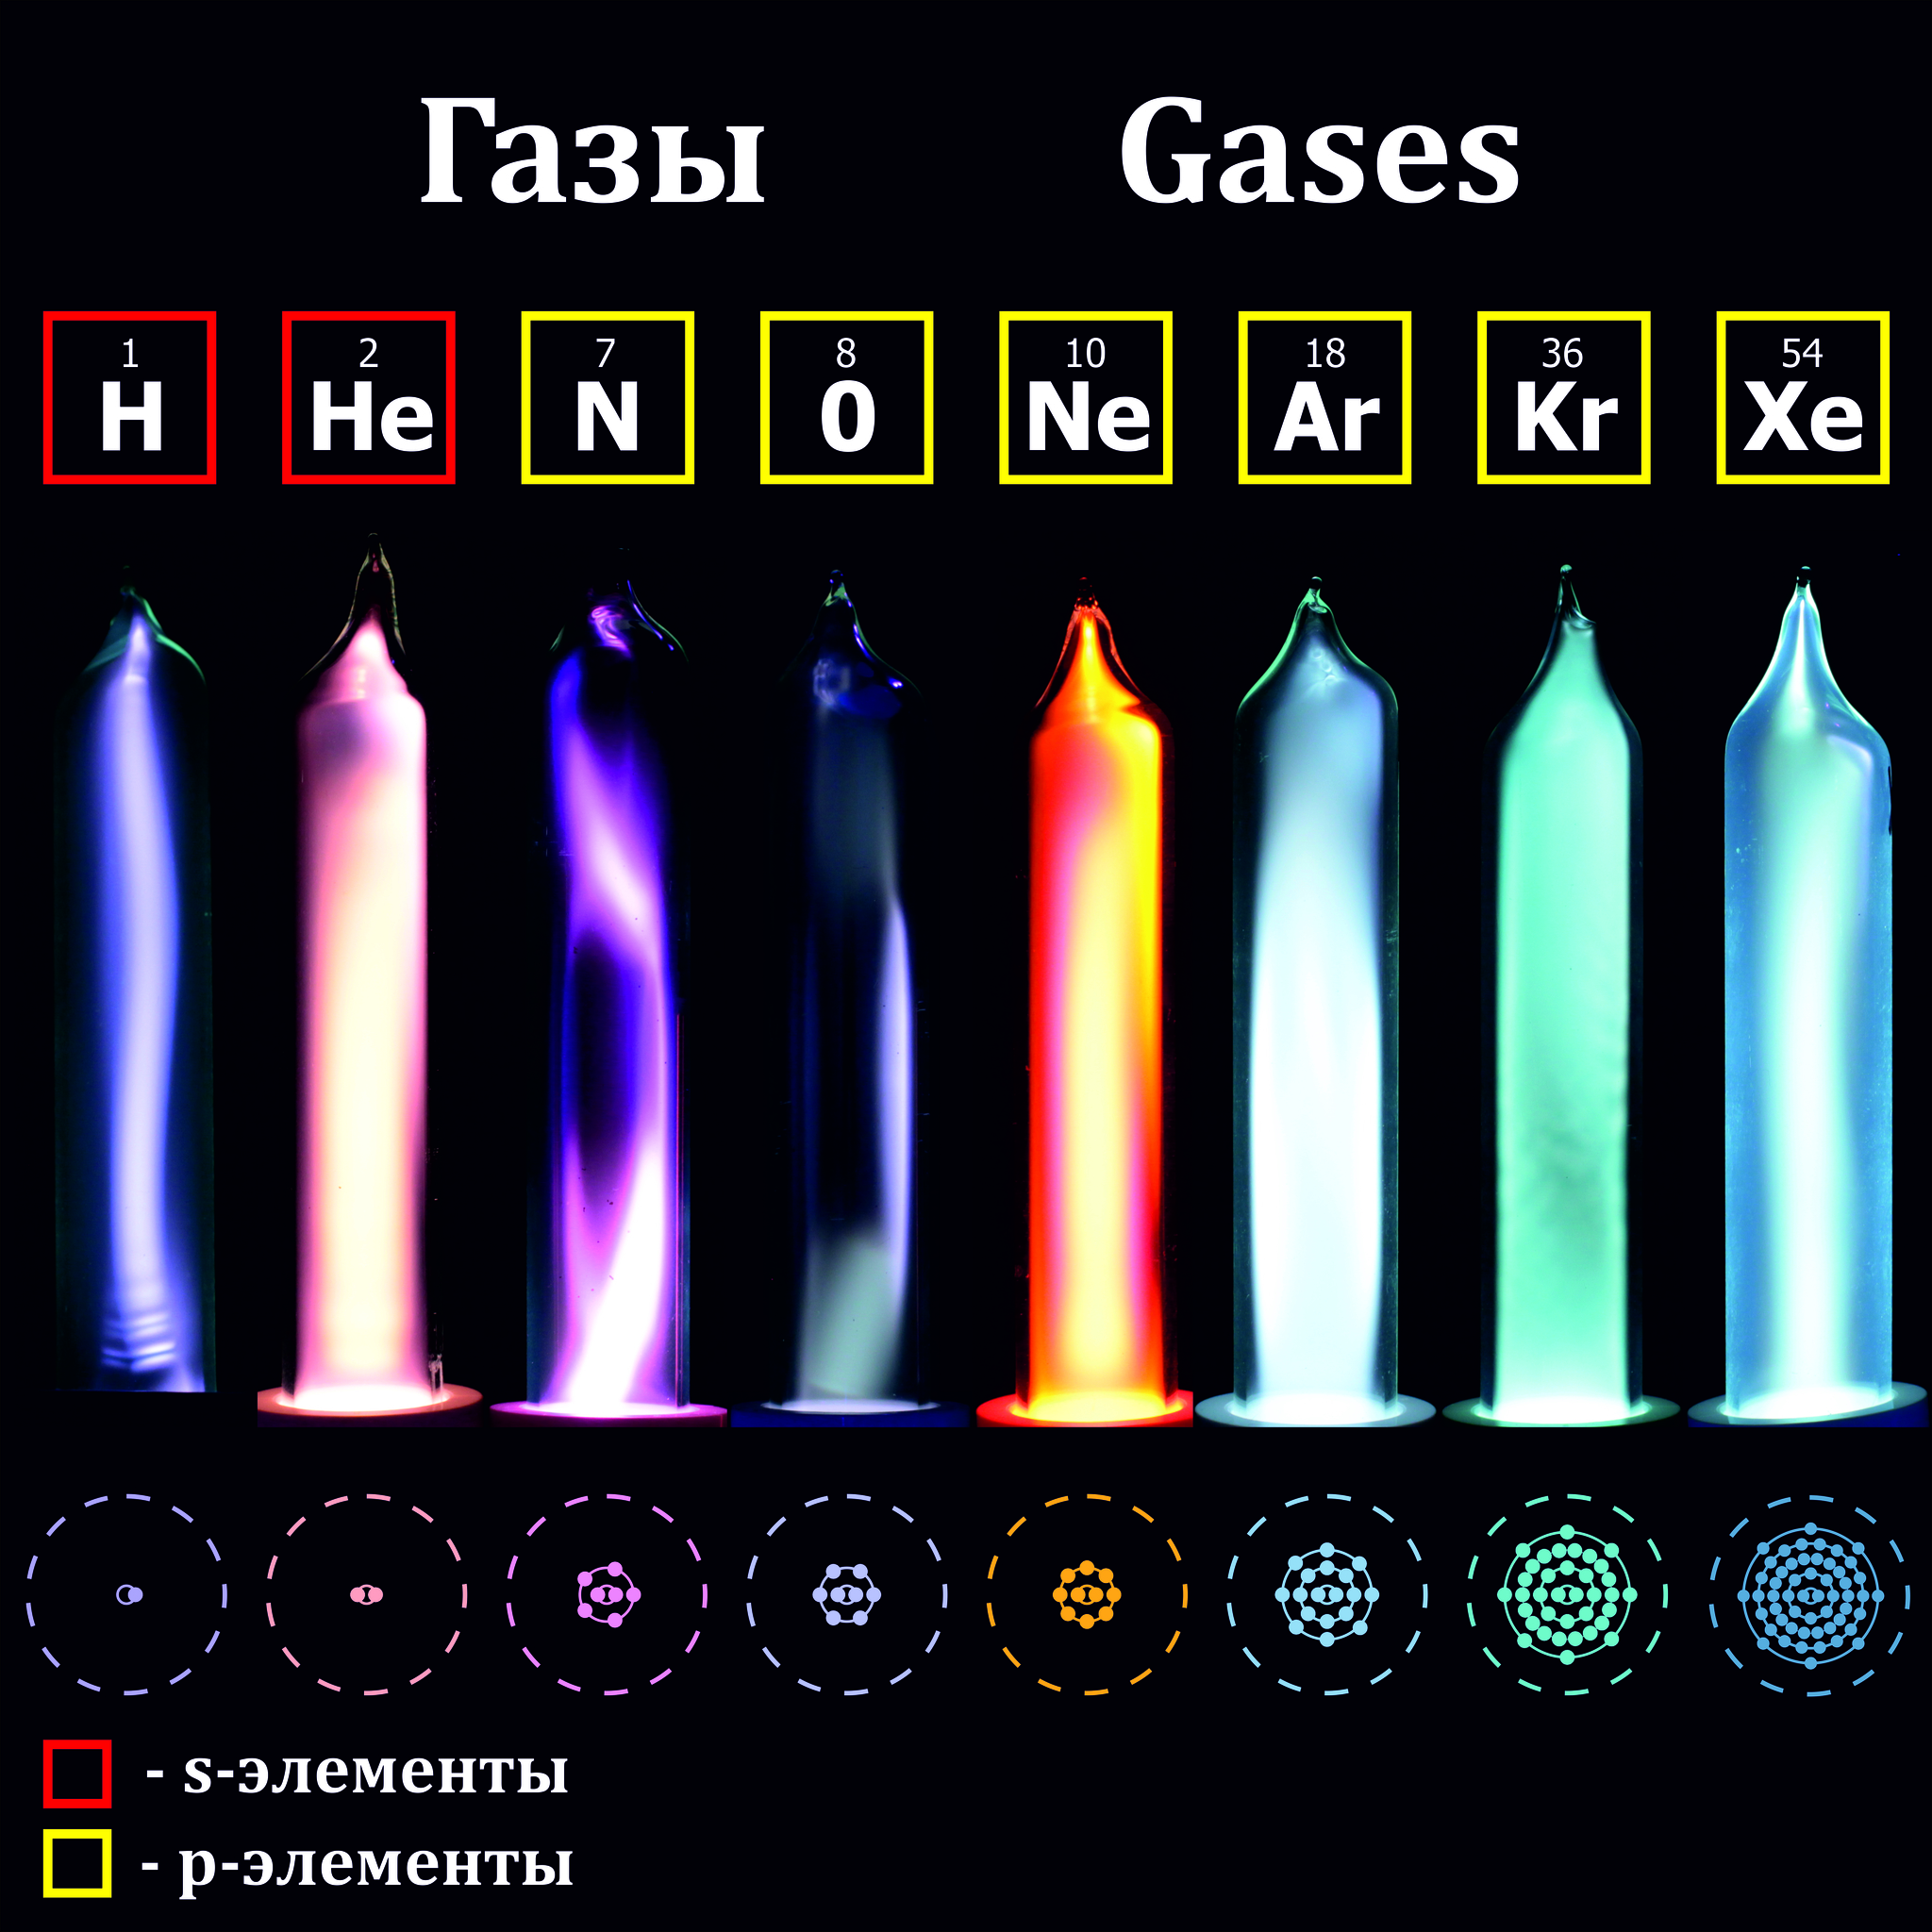 Цвета инертных газов в газоразрядных трубках